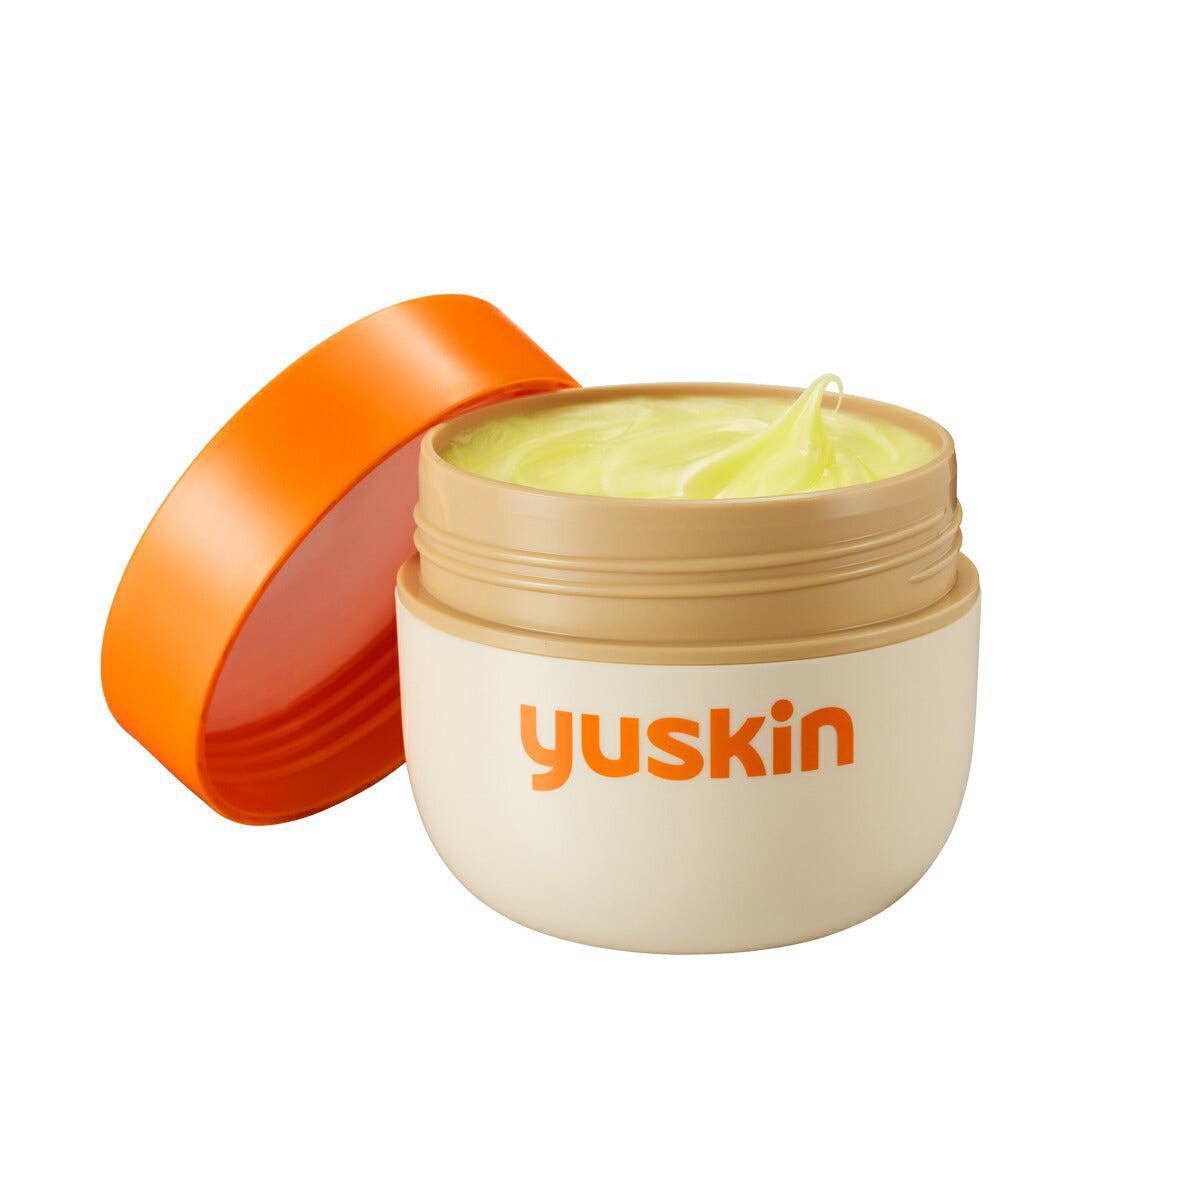 Yuskin A-Series Family Cream for Dry Skin 120g